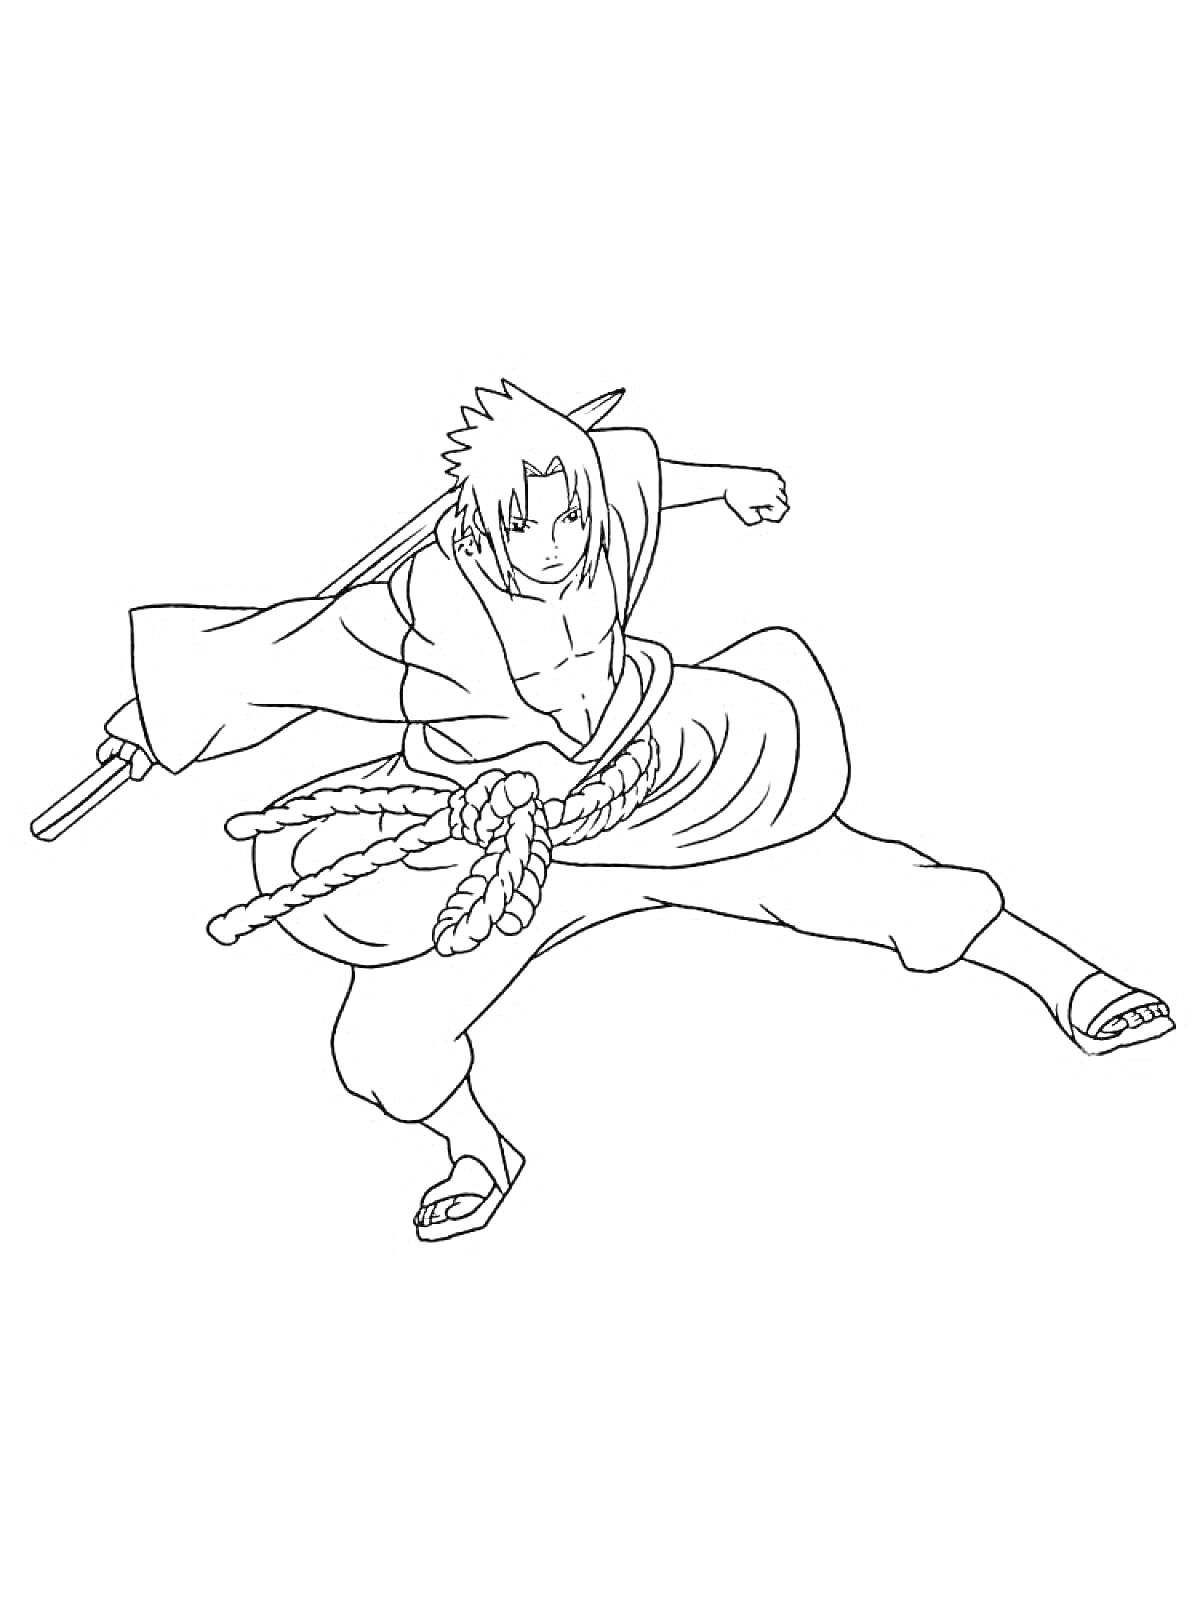 Саске Учиха в боевой стойке с катаной, веревкой вокруг пояса и длинными рукавами